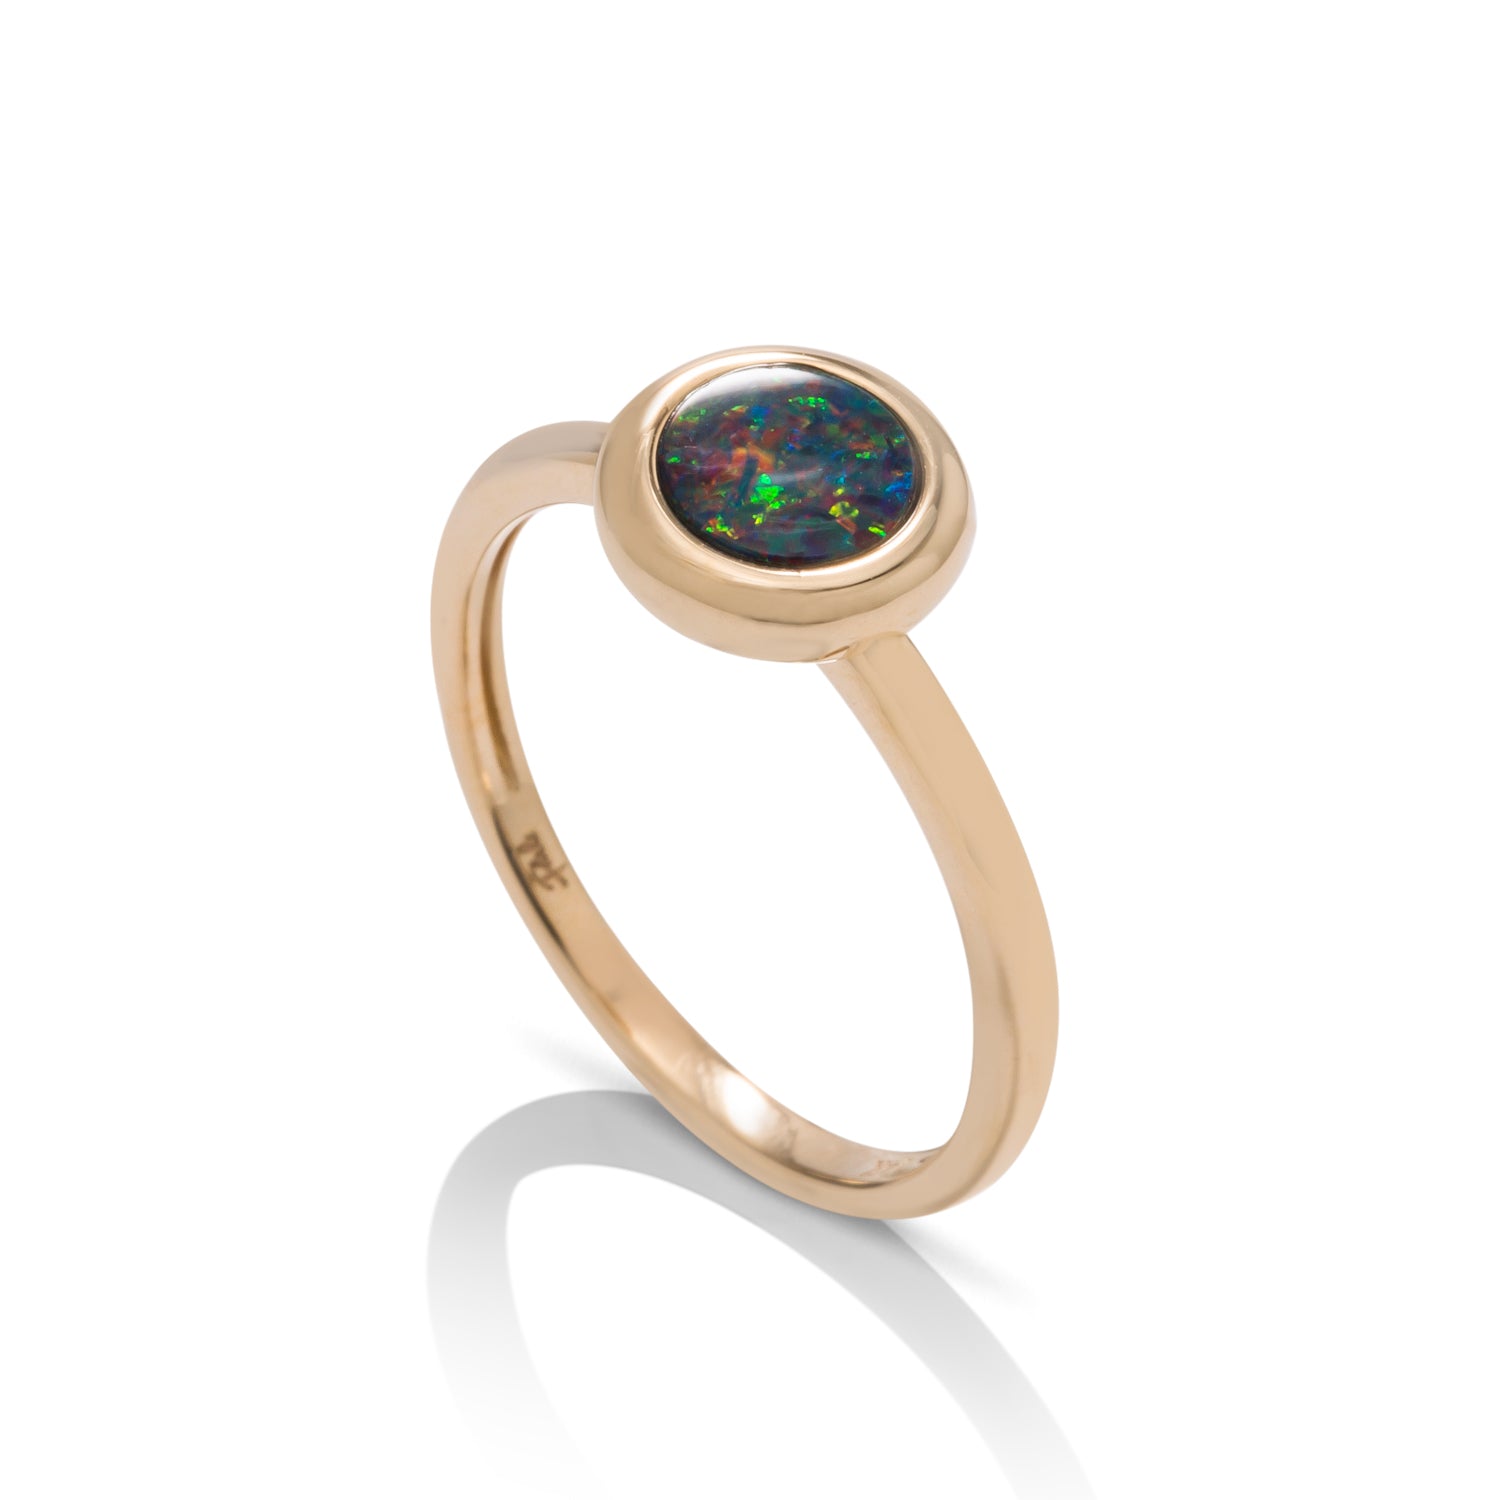 Australian Opal Bezel Ring - Charles Koll Jewellers